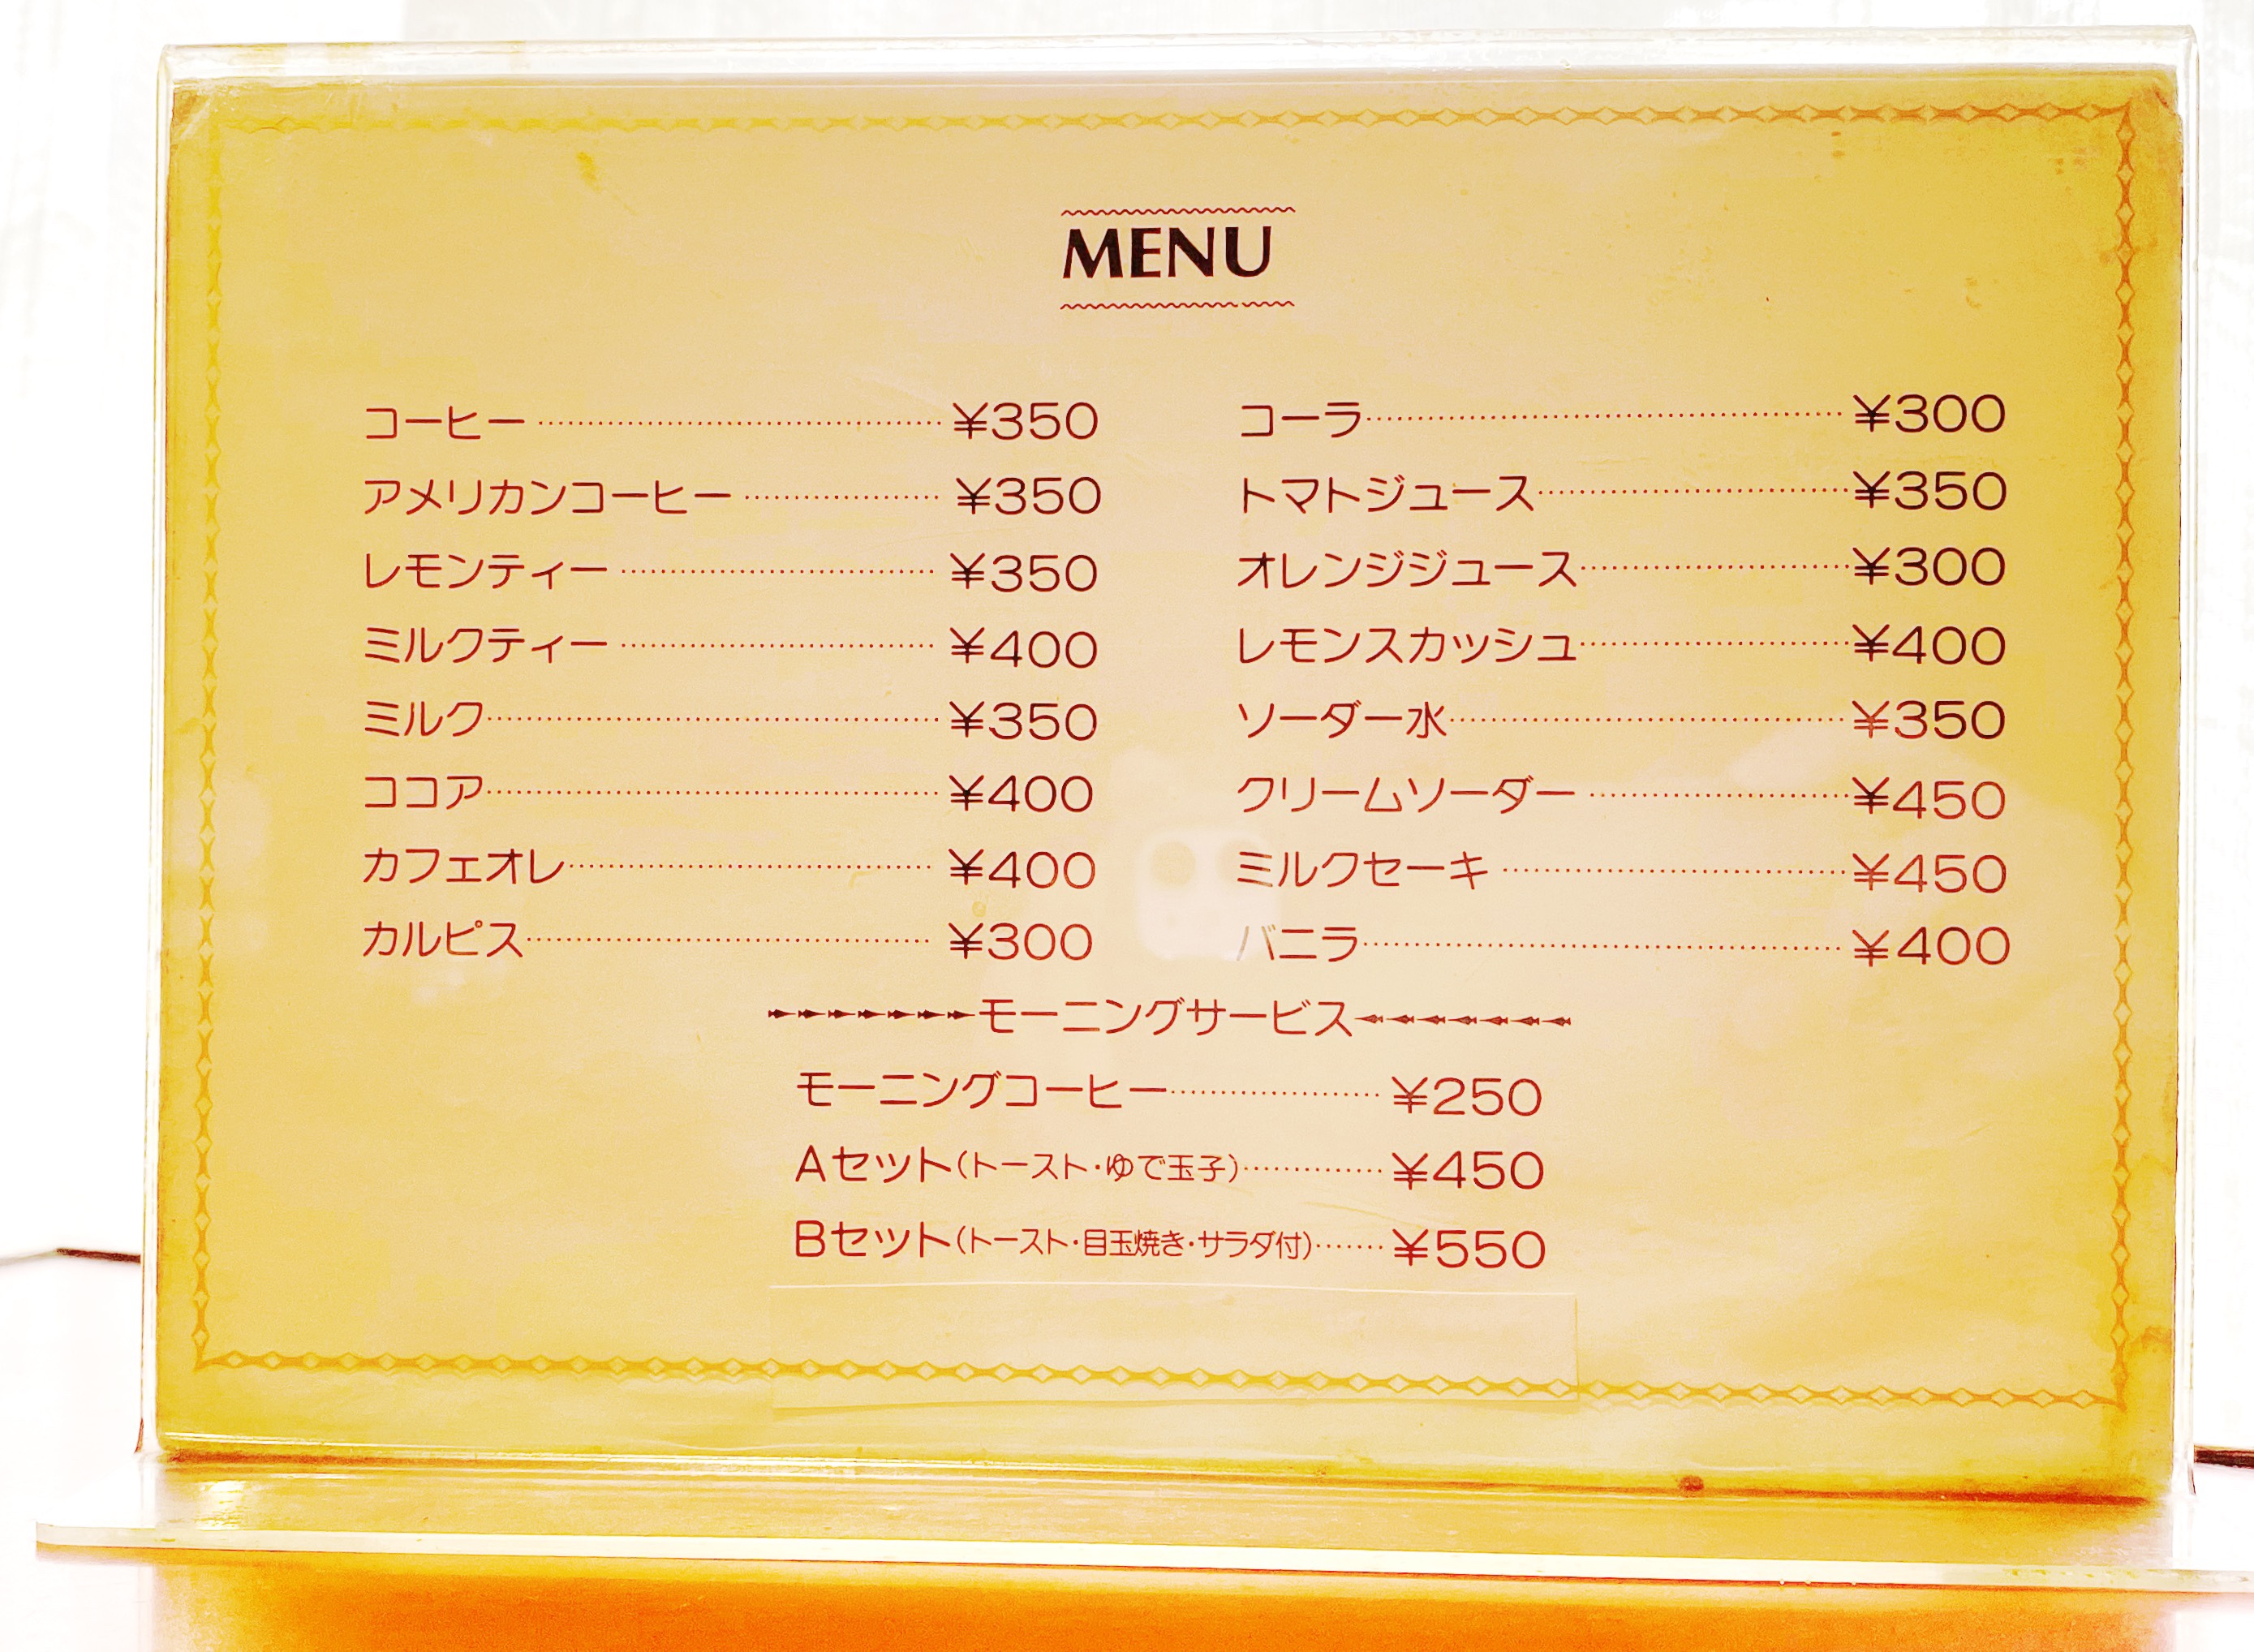 ドリンクメニュー。モーニングコーヒーは250円。